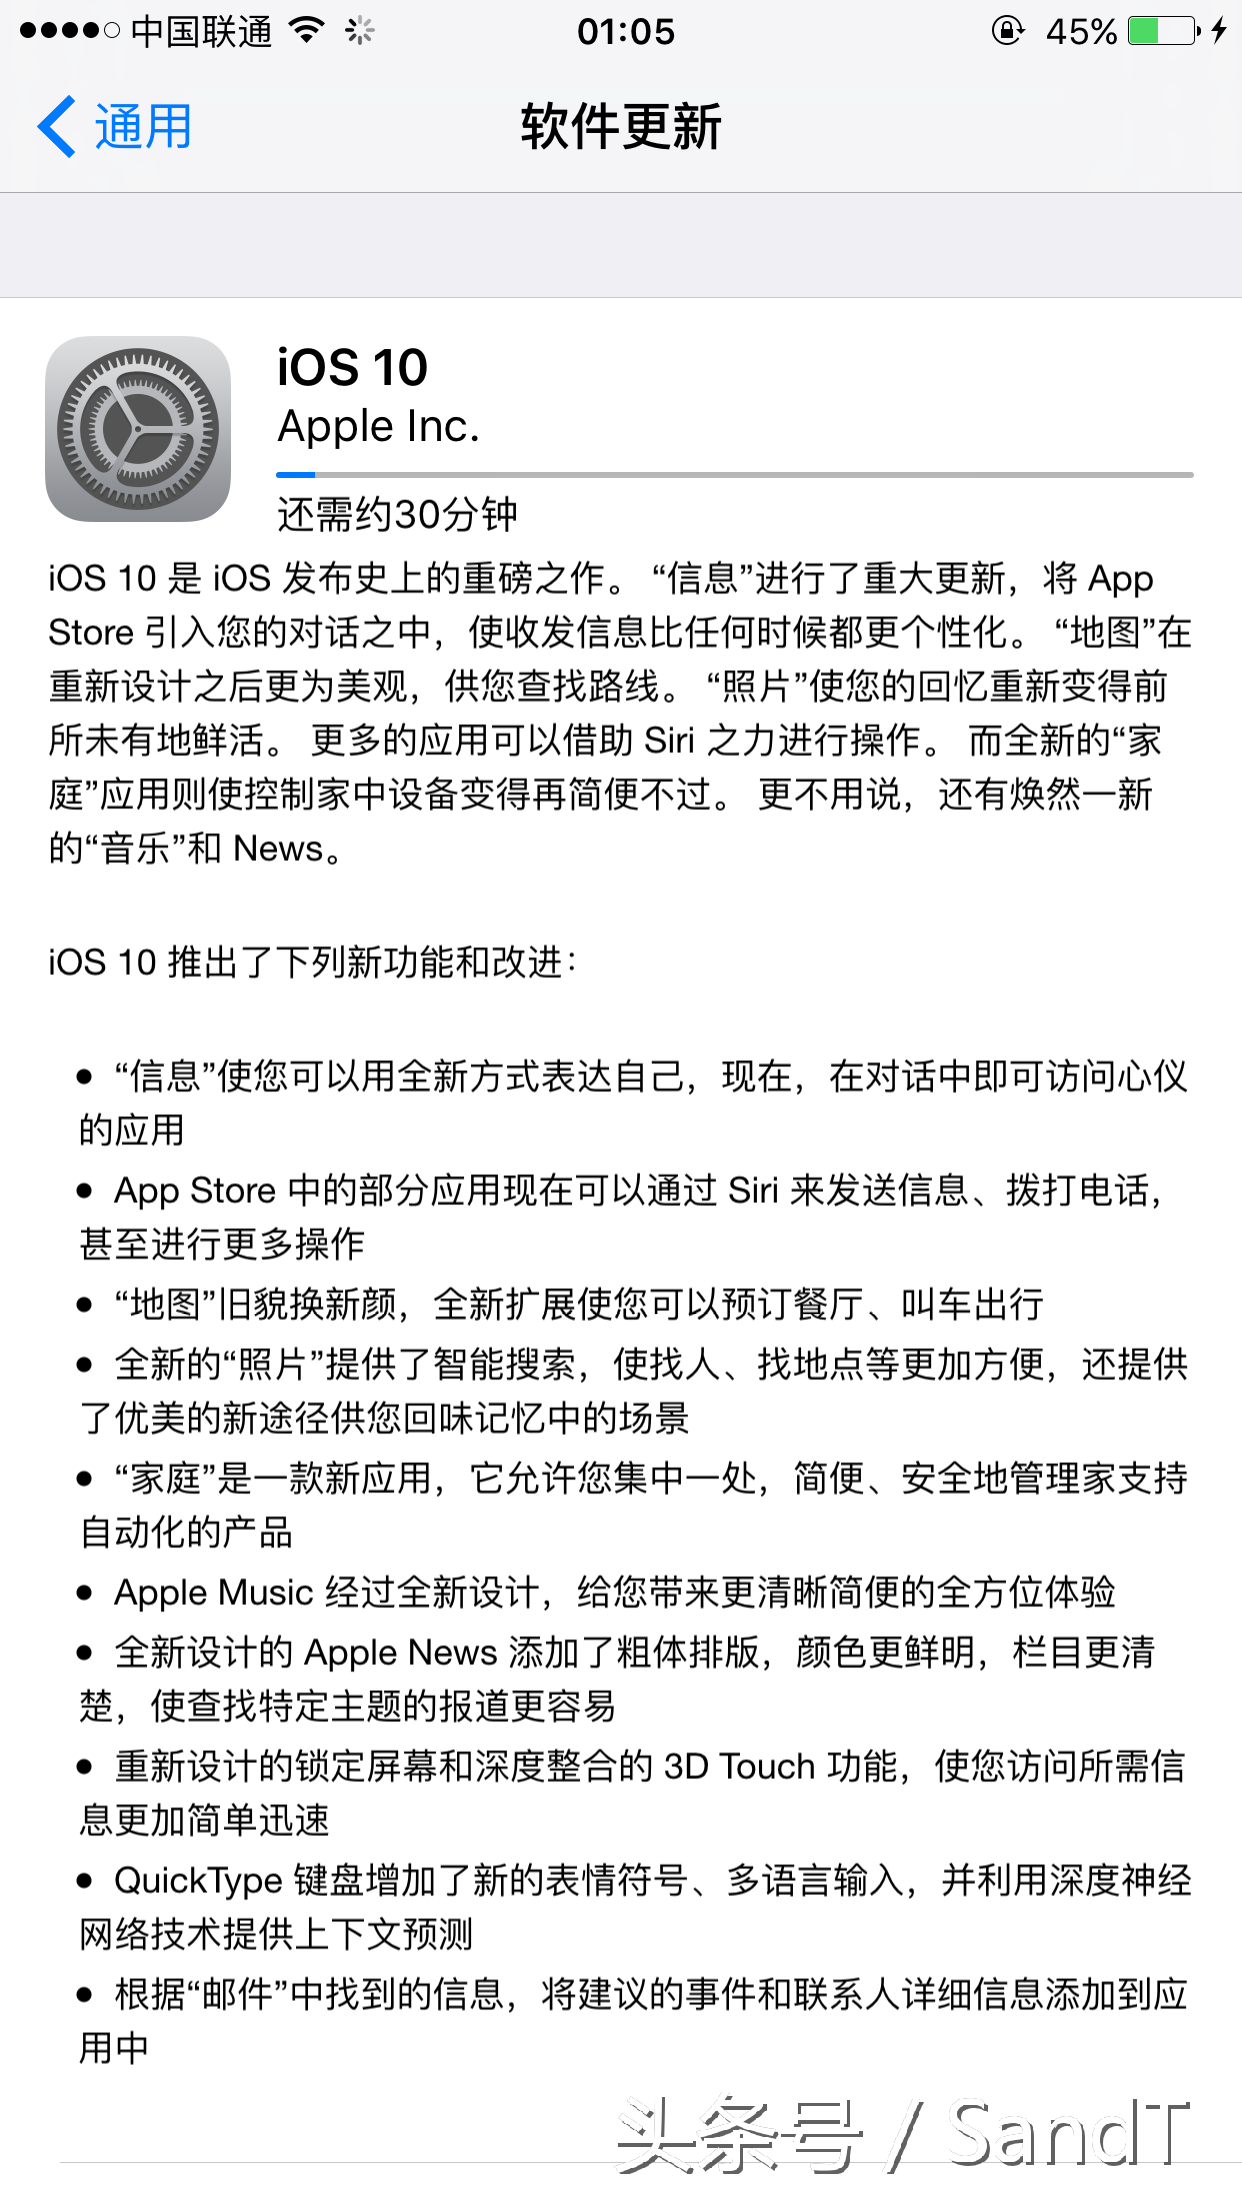 iOS10总算来啦！炒冷饭的iOS10会好不好用呢？